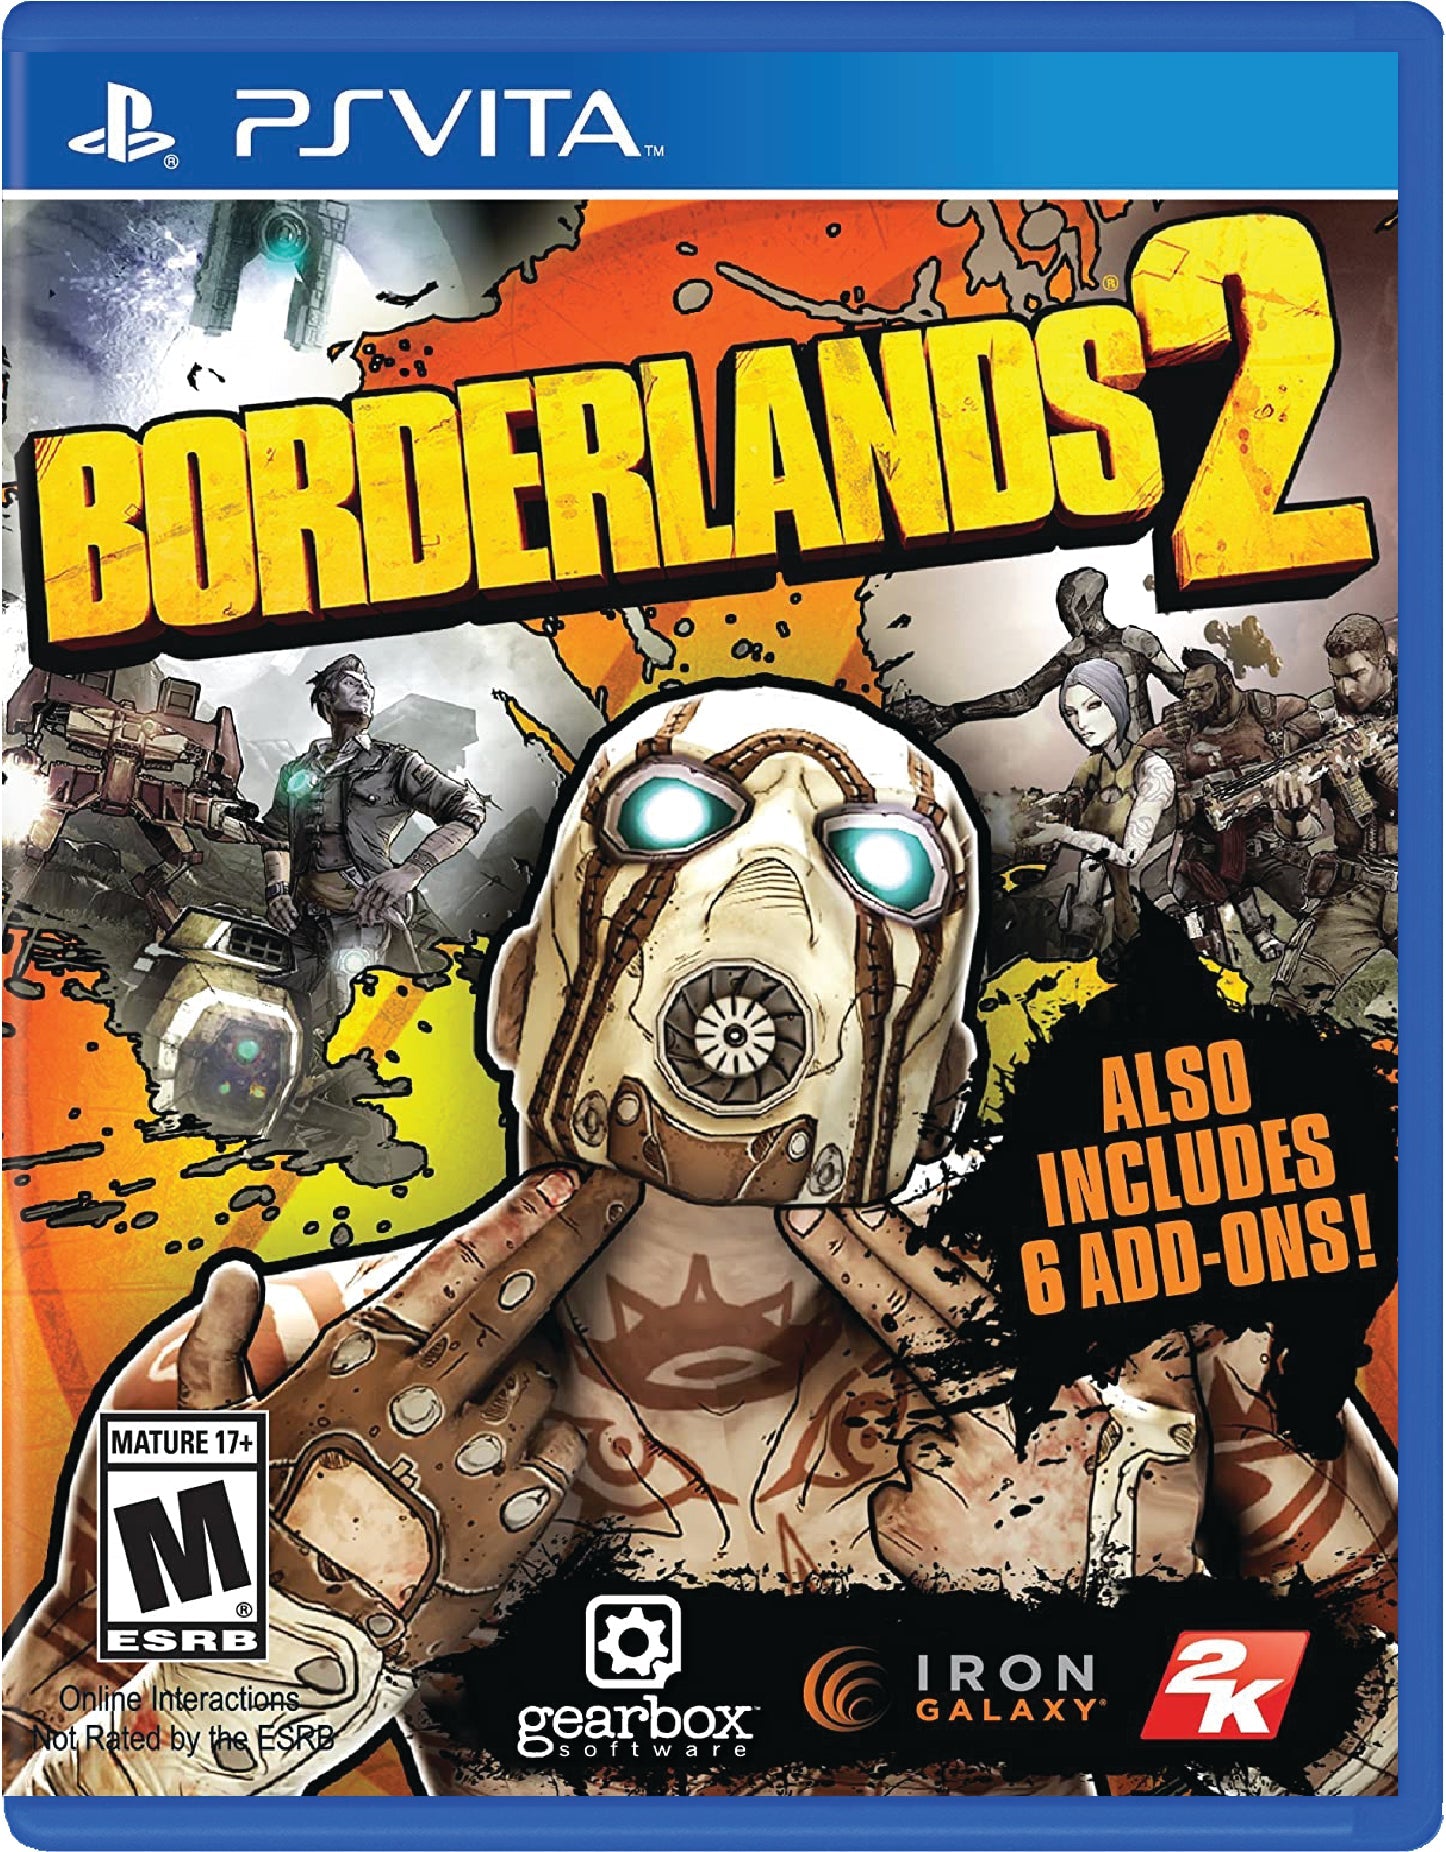 Borderlands 2 Cover Art